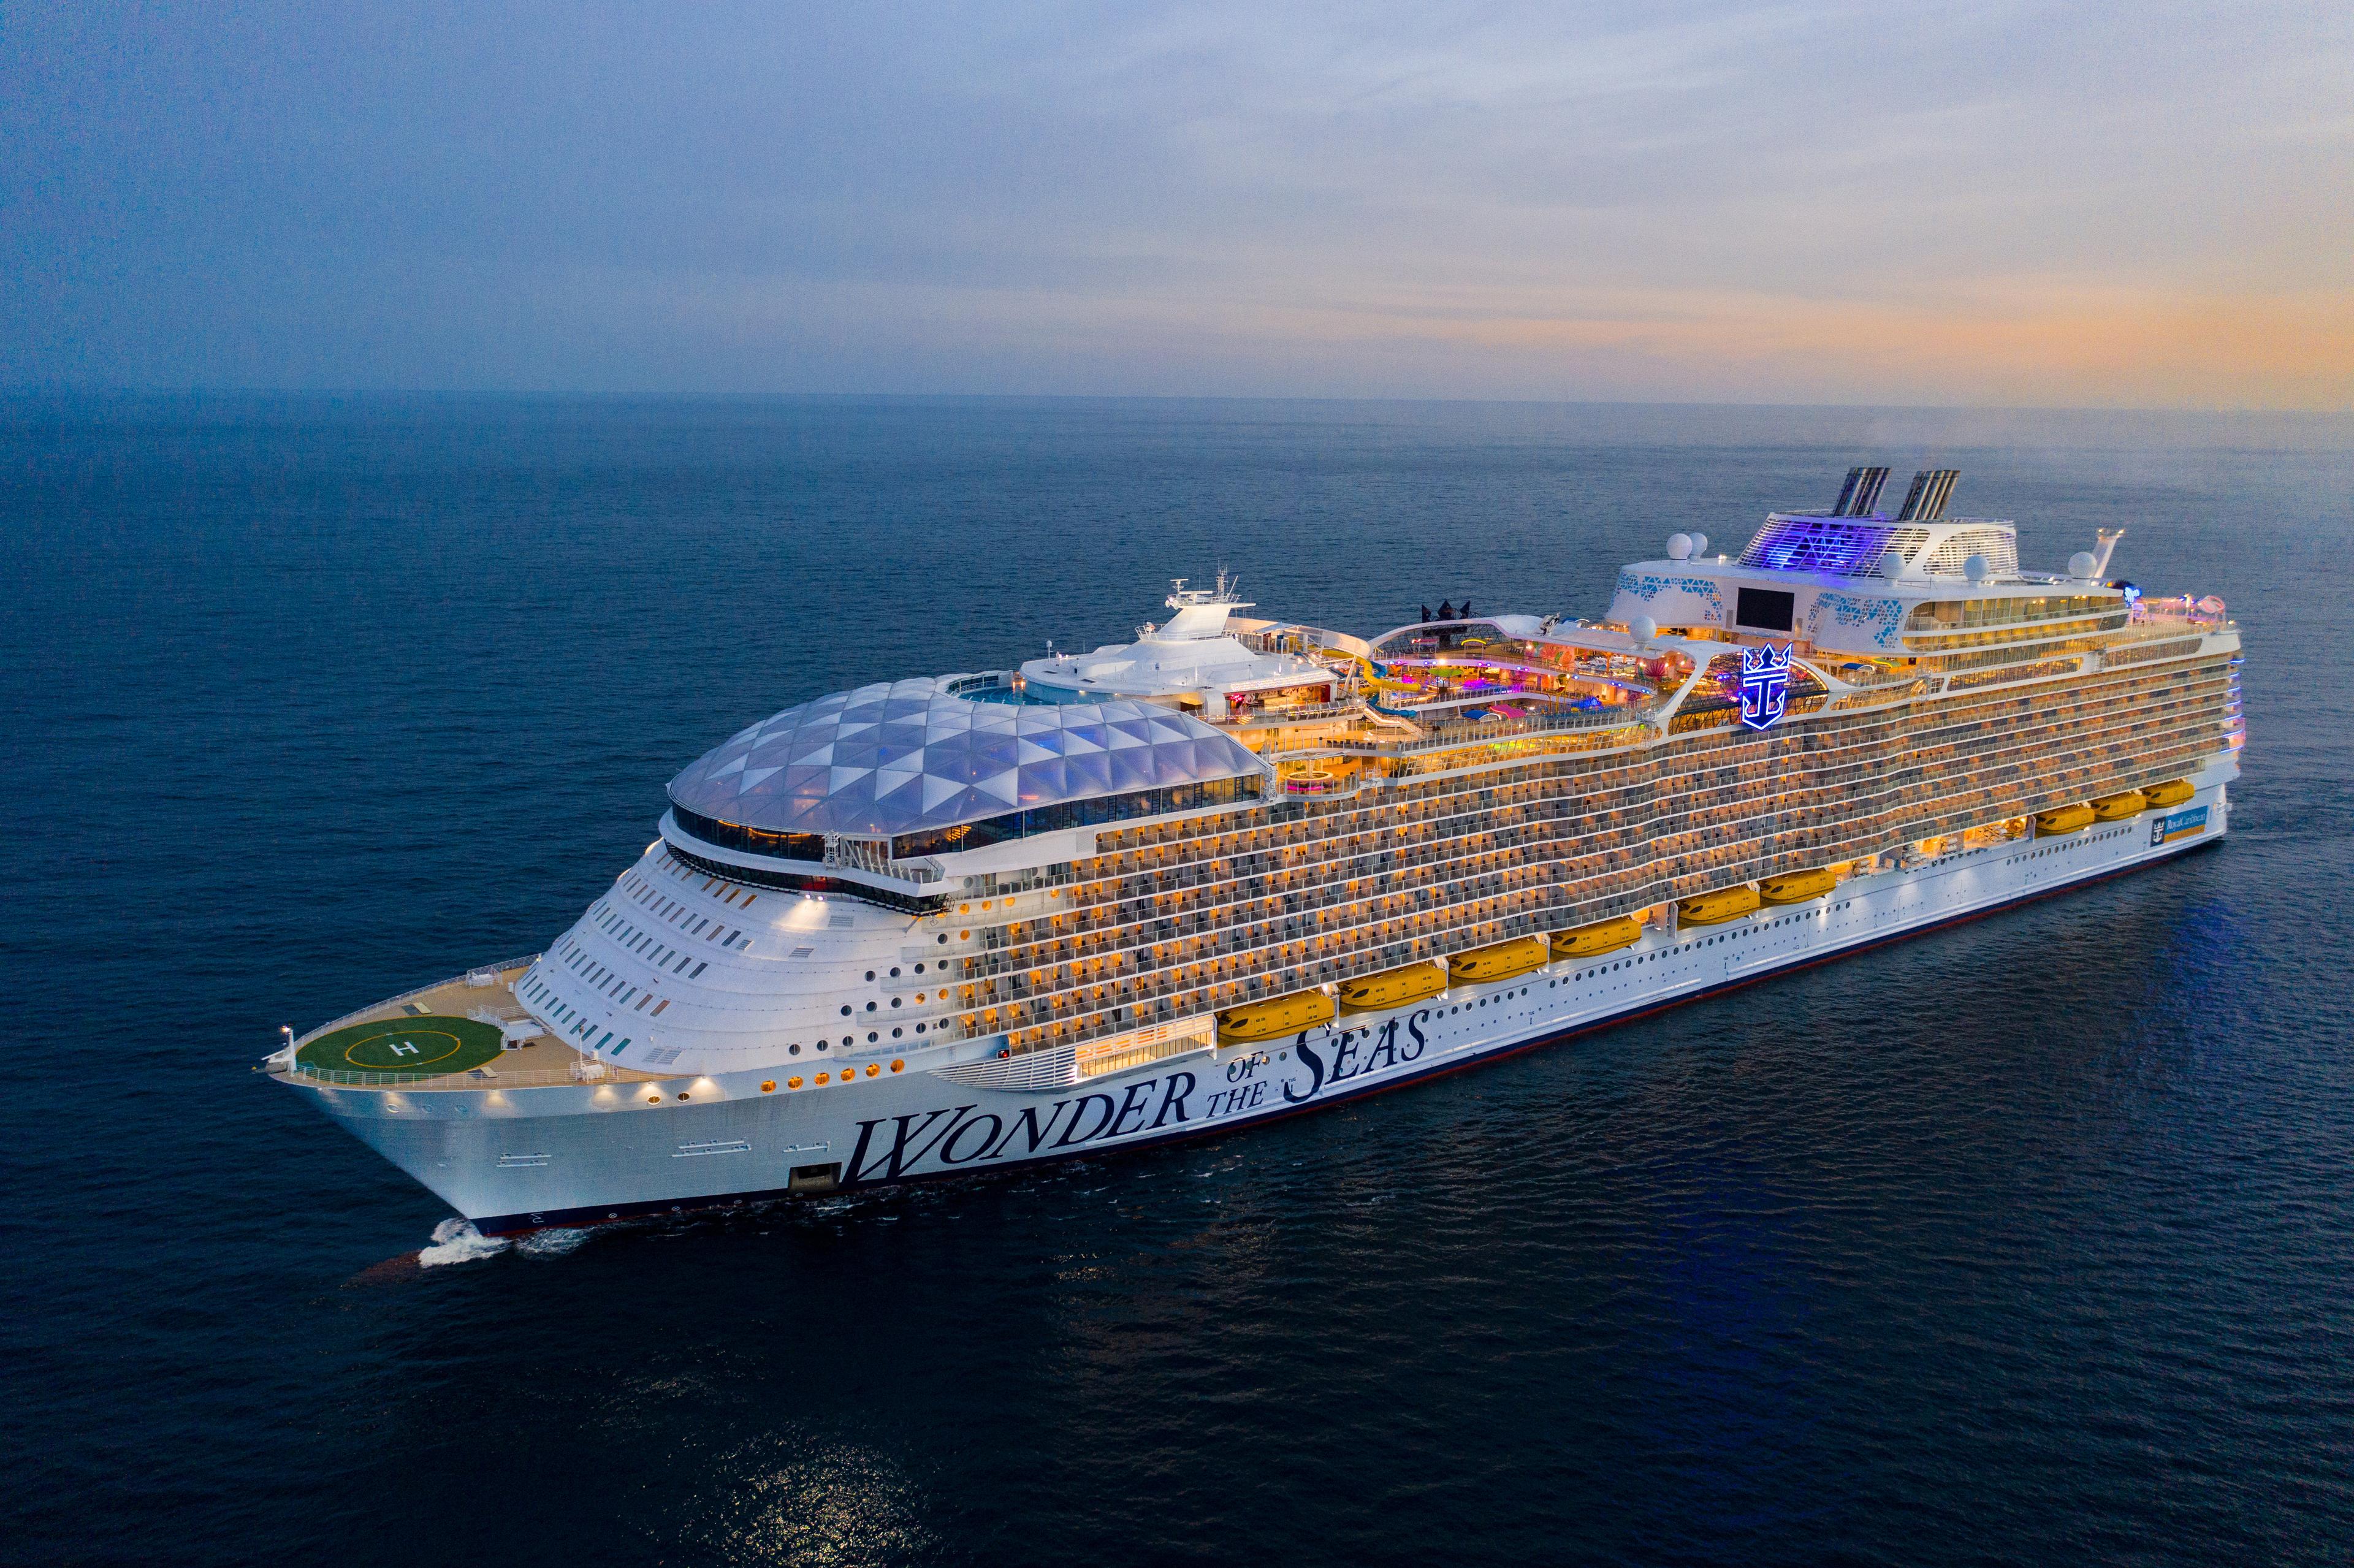 Caribbean Cruise 2025 background